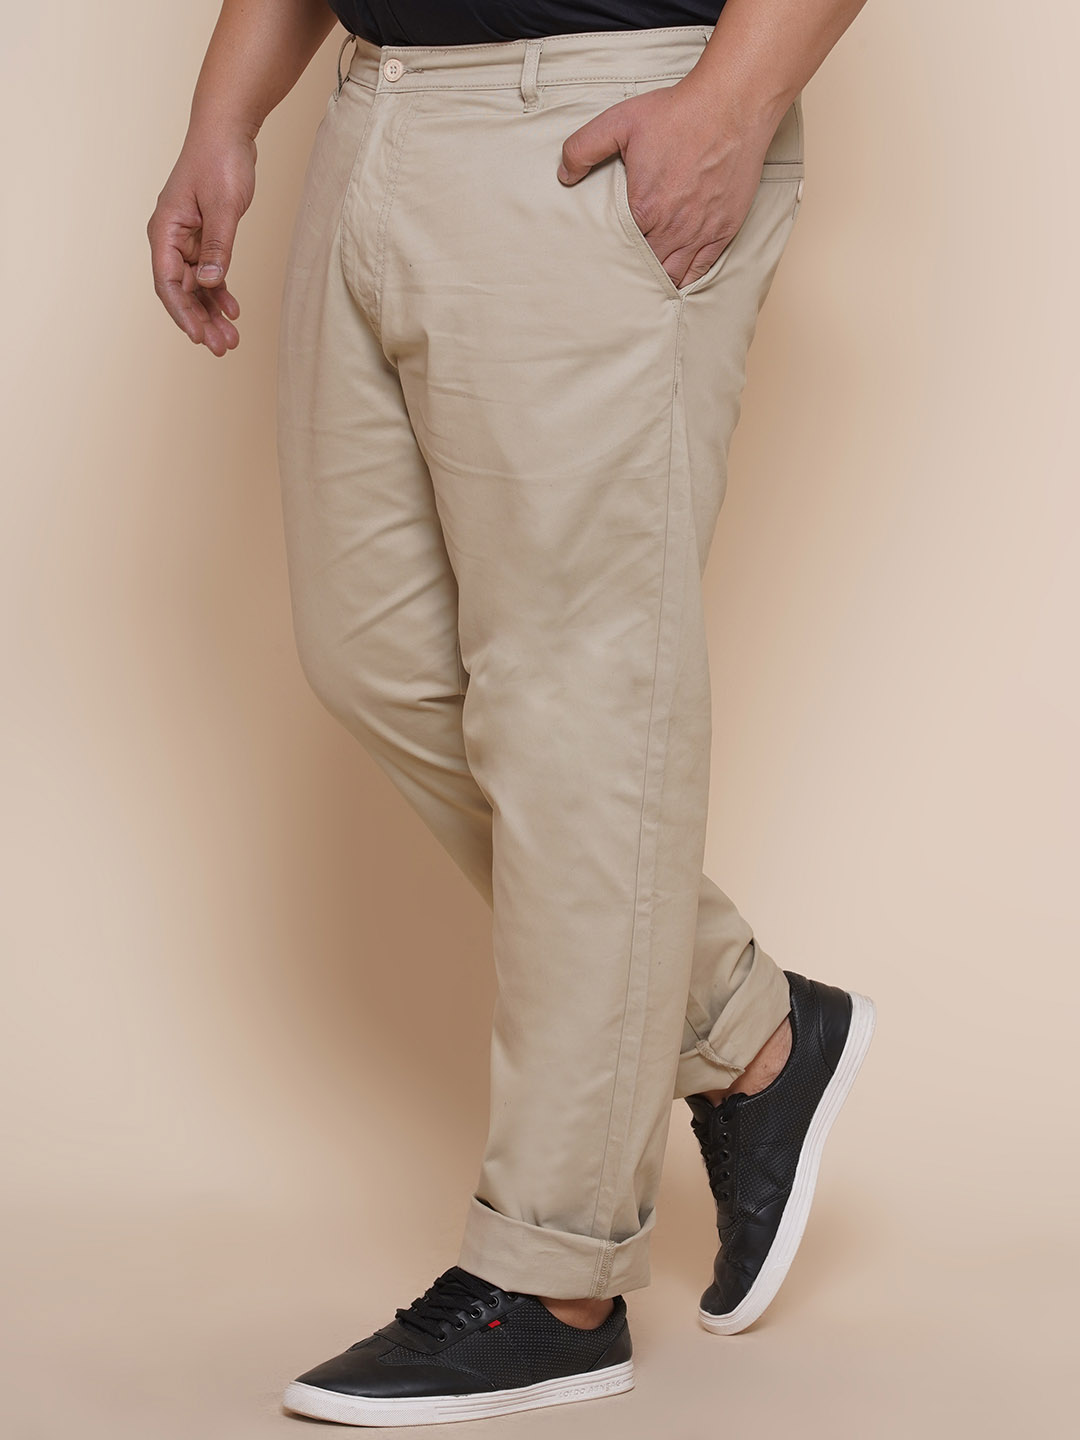 bottomwear/trousers/JPTR2195W/jptr2195w-4.jpg